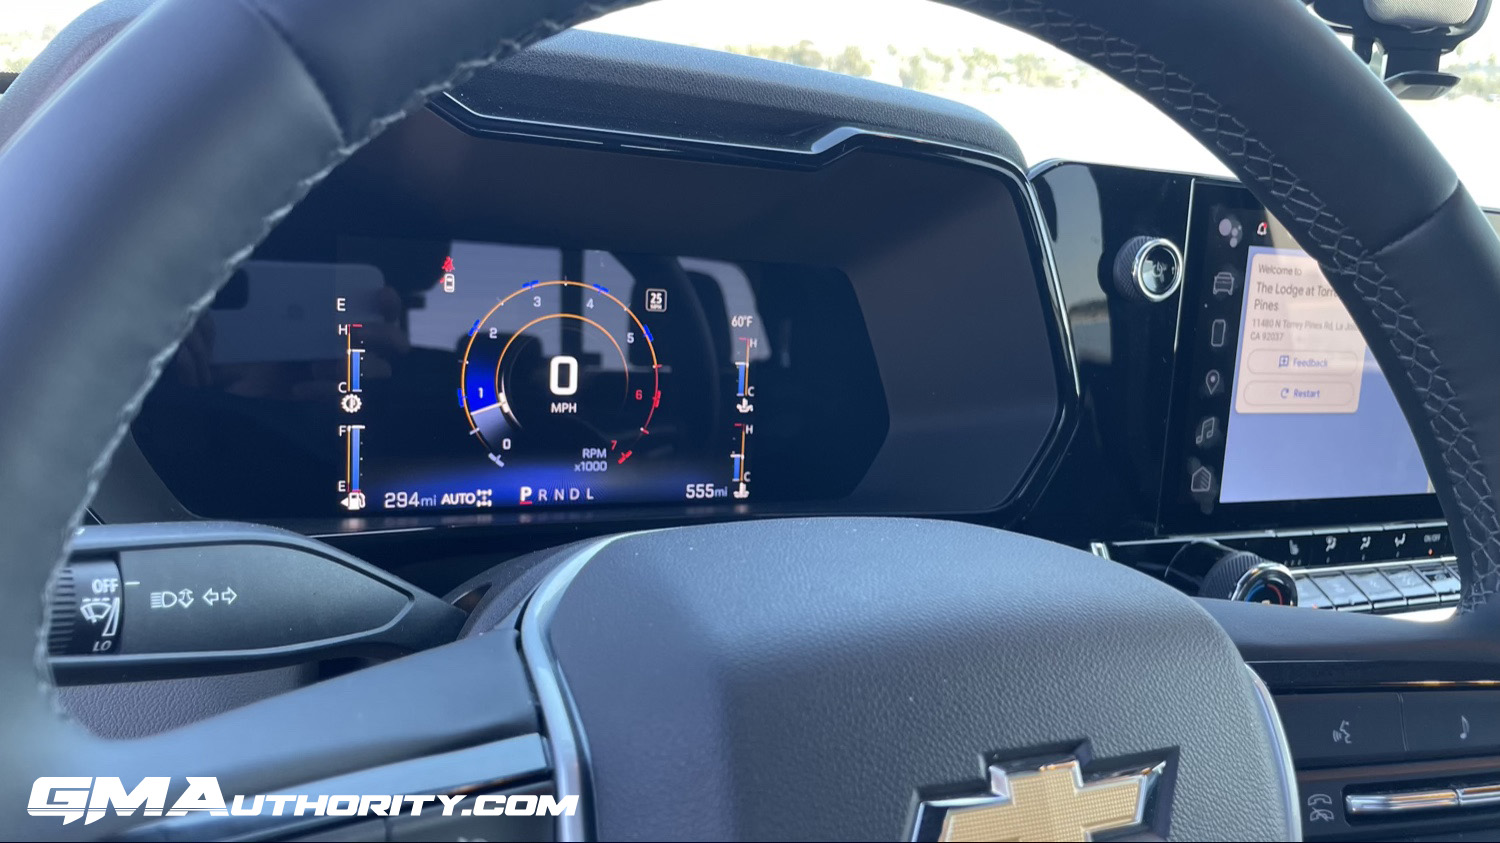 2023 5th Gen Camaro Digital Dashboard Upgrade - Camaro Forums